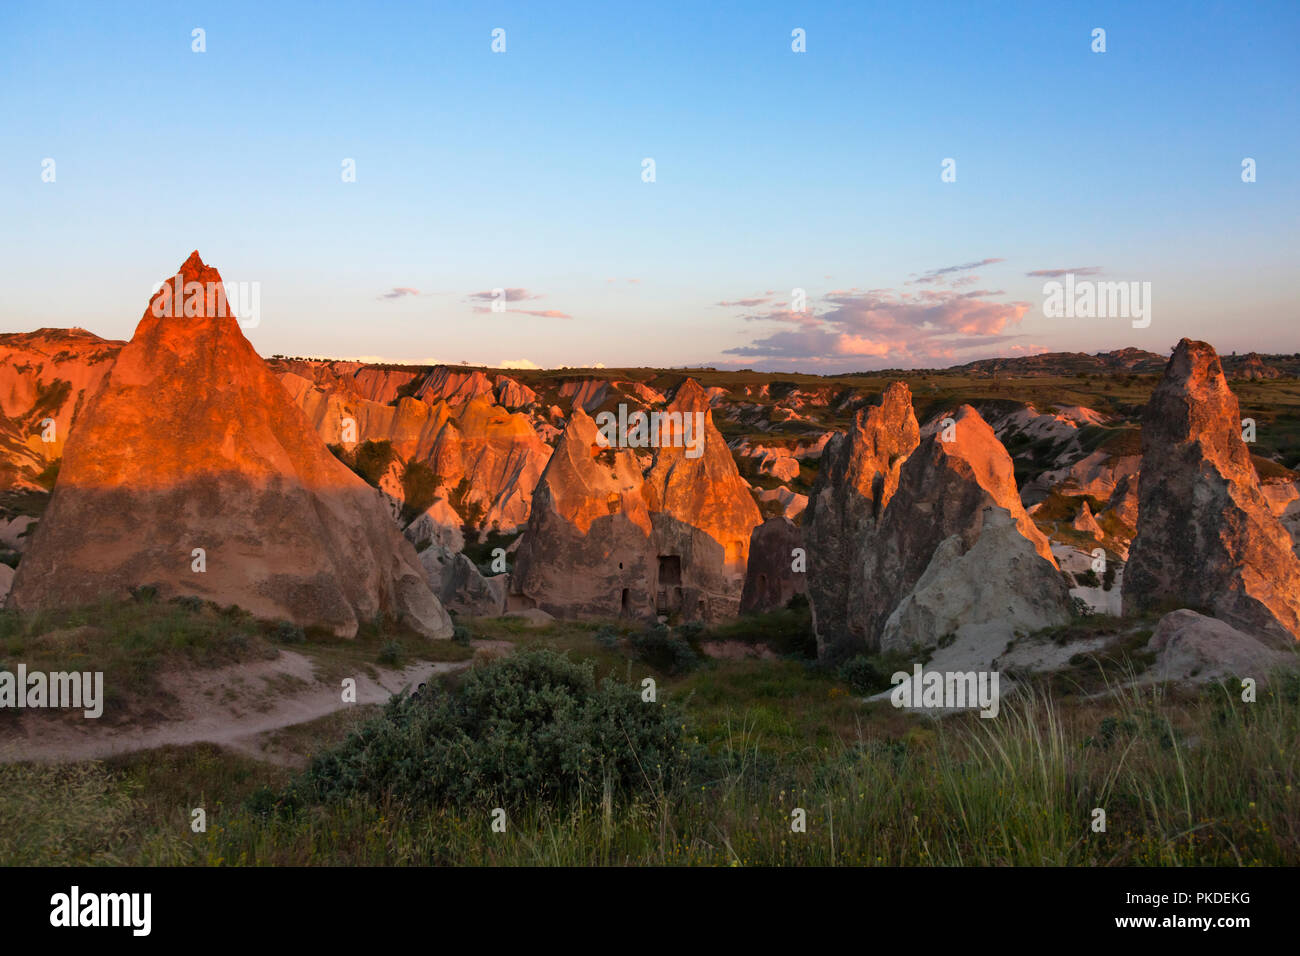 Formazioni di roccia nella valle, Goreme, Cappadocia, Turchia (Patrimonio Mondiale dell'UNESCO) Foto Stock